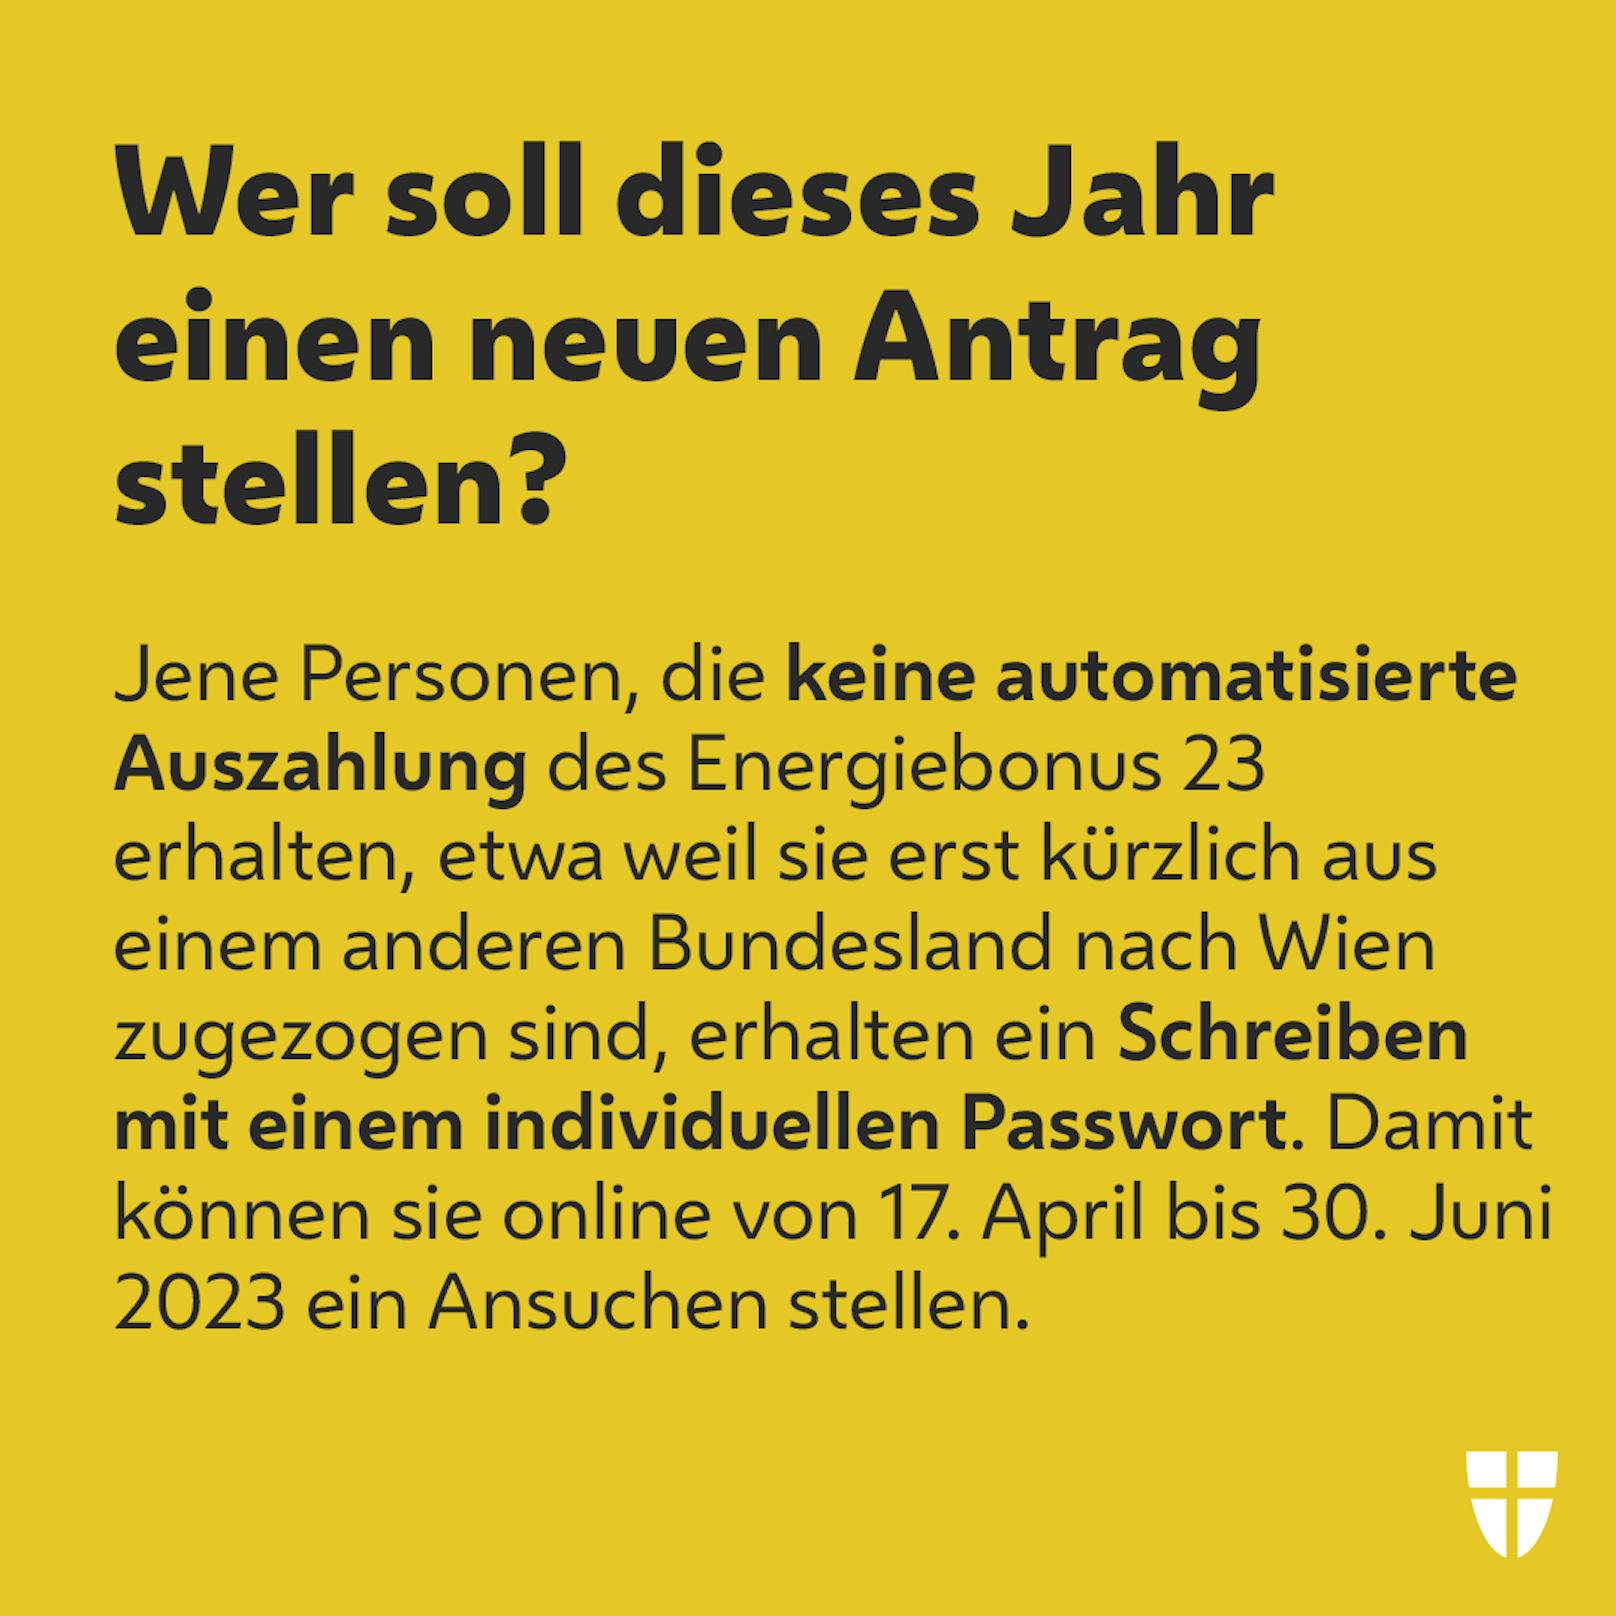 Mit diesen Sujets informiert die Stadt Wien ihre Bürger über den <a target="_blank" data-li-document-ref="100266321" href="https://www.heute.at/g/frist-fuer-200-energiebonus-wien-laeuft-100266321">Energiebonus 2023</a>.